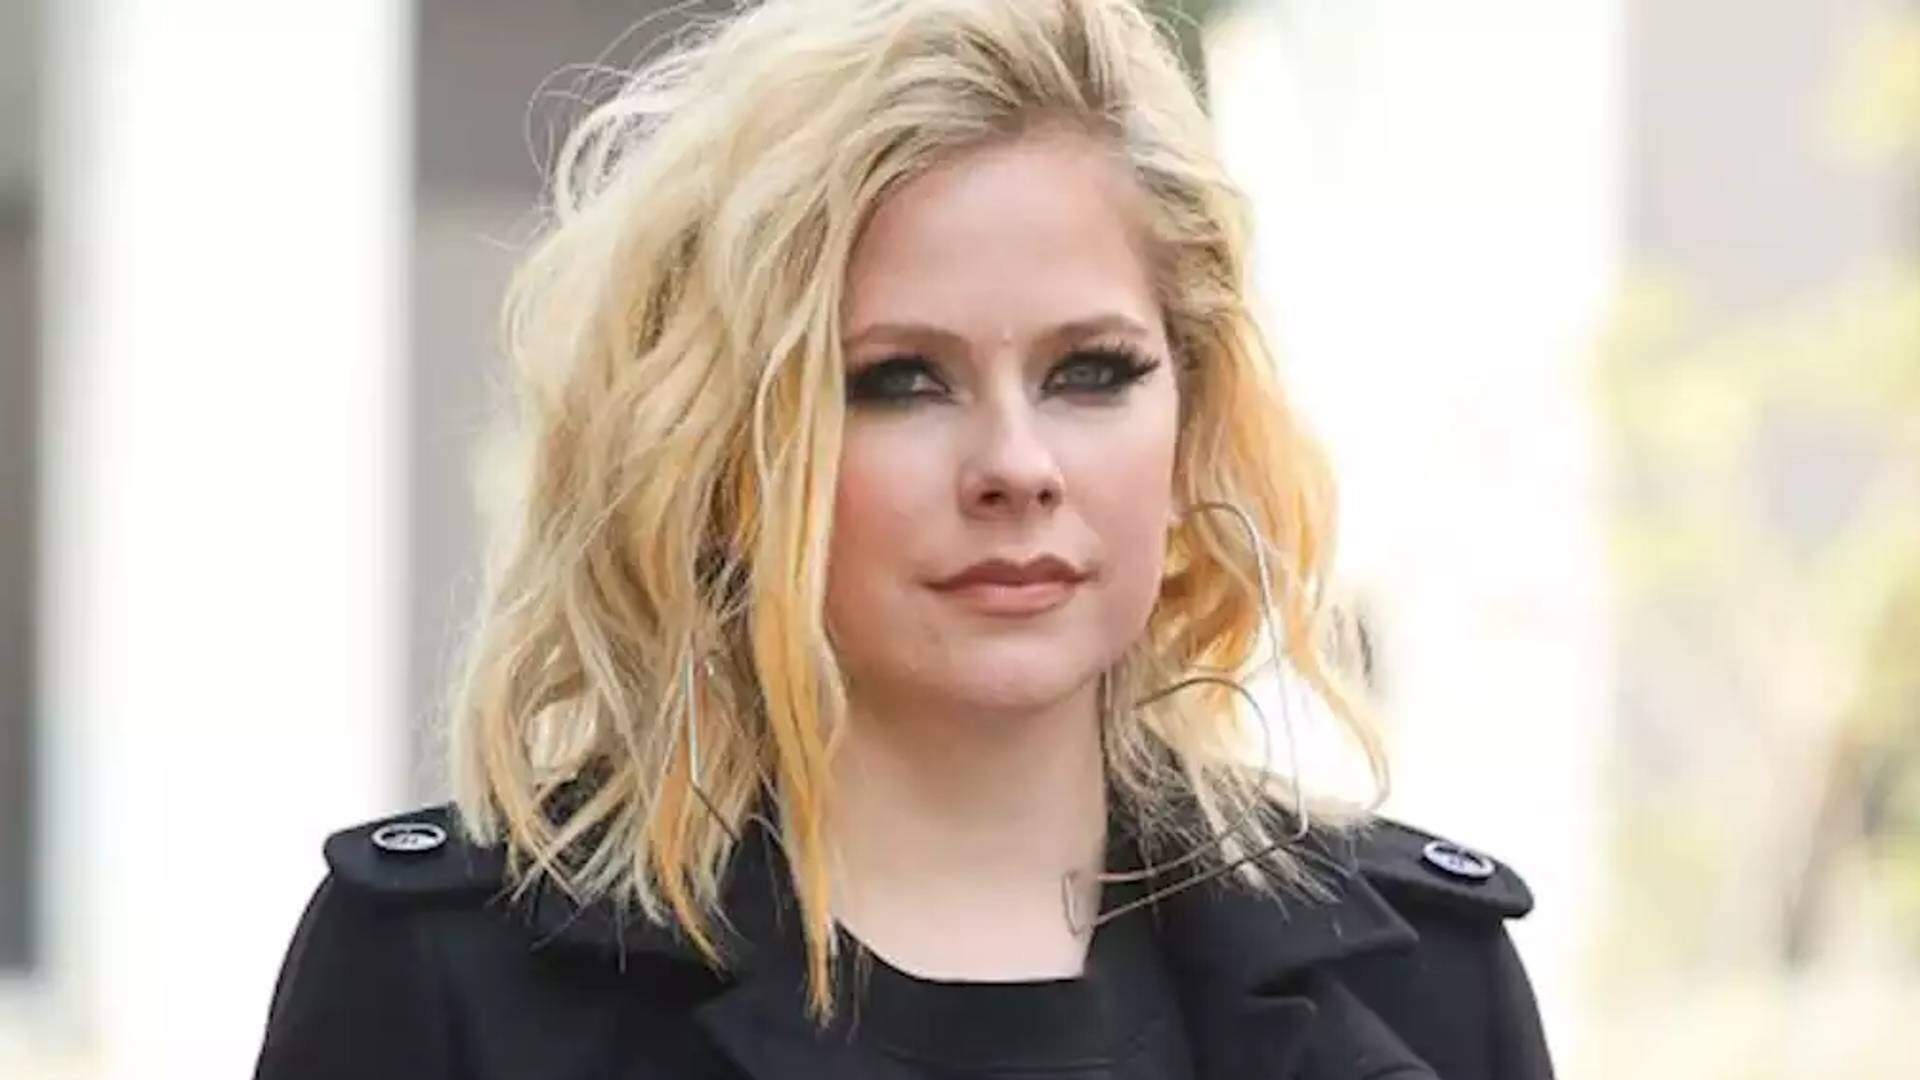 A fila andou! Após fim do noivado com Mod Sun, Avril Lavigne confirma romance com famoso rapper - Metropolitana FM